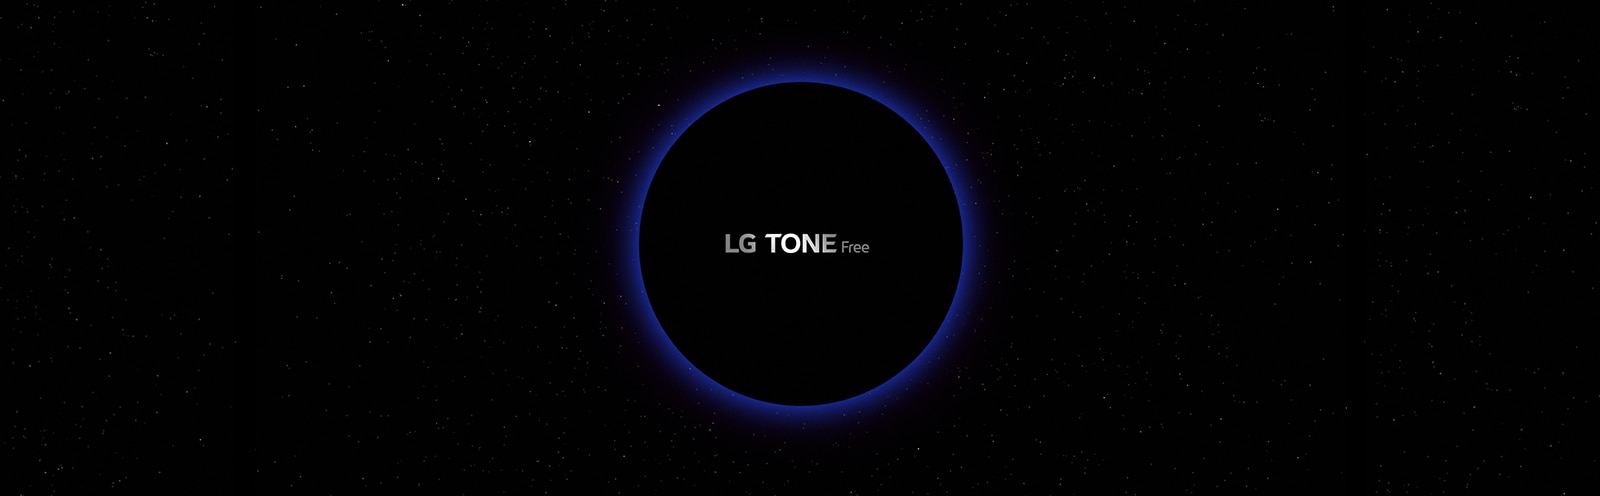 Una imagen de un espacio de galaxias y un círculo iluminado de azul en el centro con letras "LG TONE Free" dentro del círculo